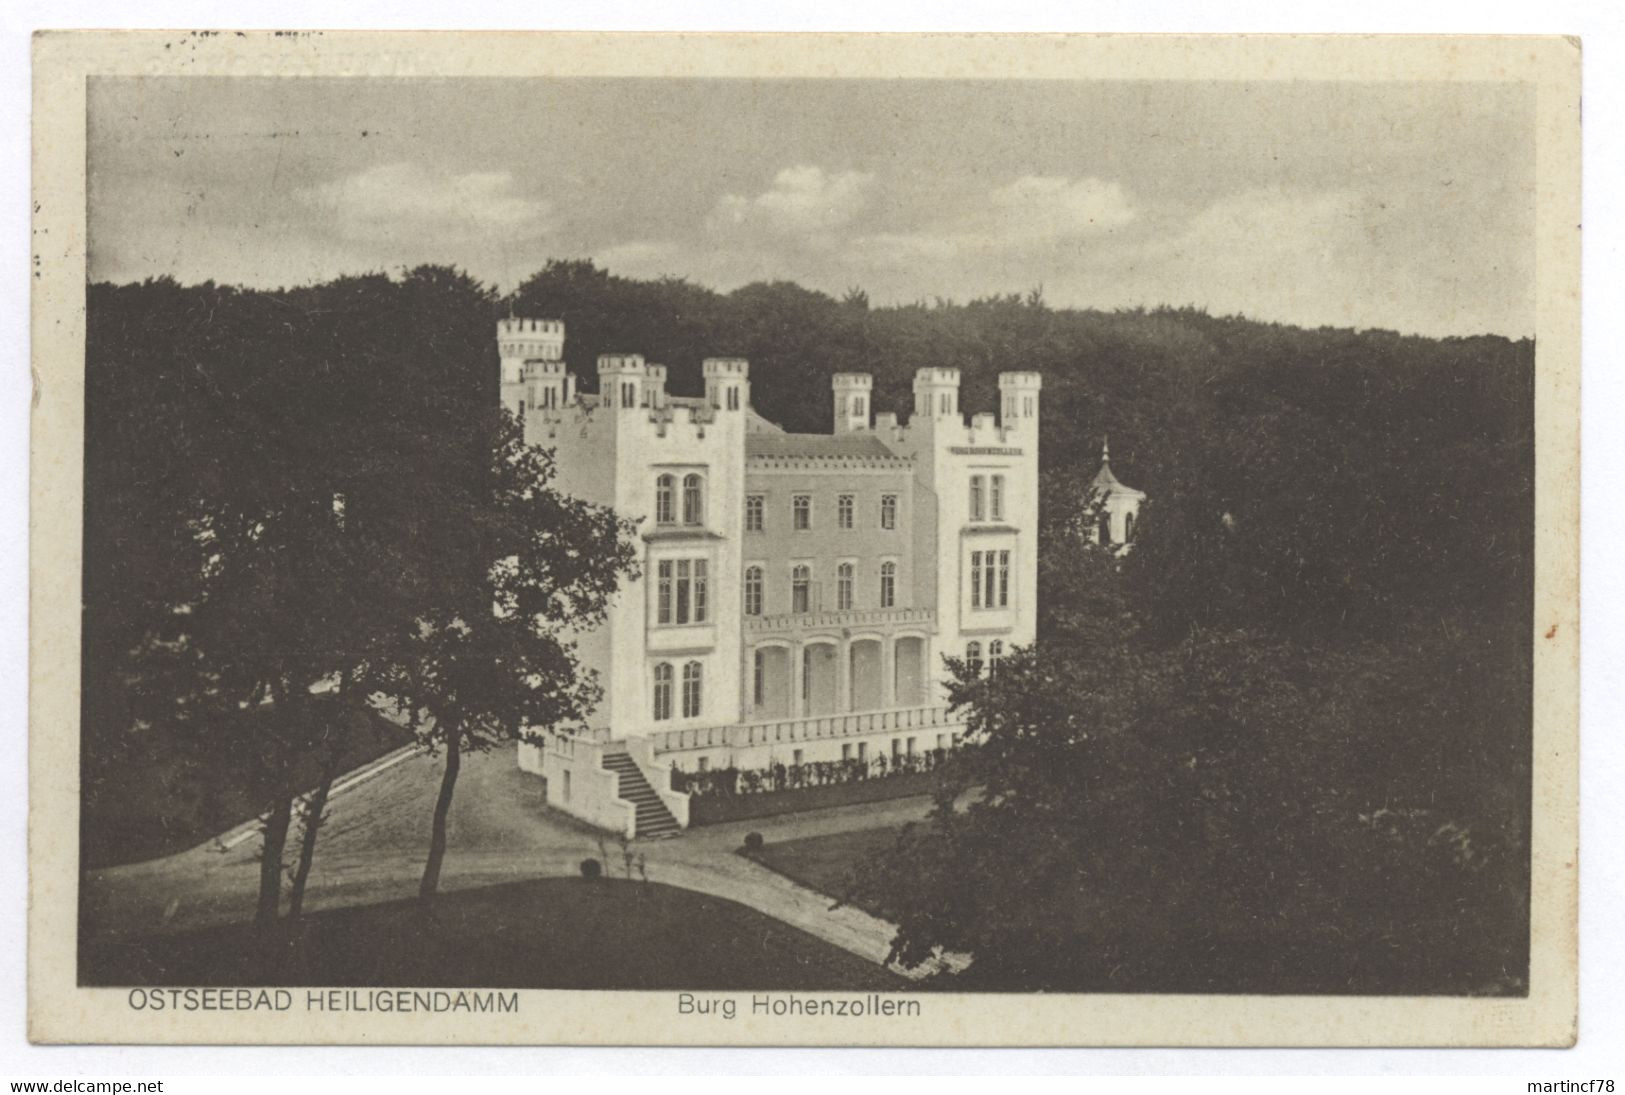 O-2563 Ostseebad Heiligendamm Burg Hohenzollern 1931 - Heiligendamm